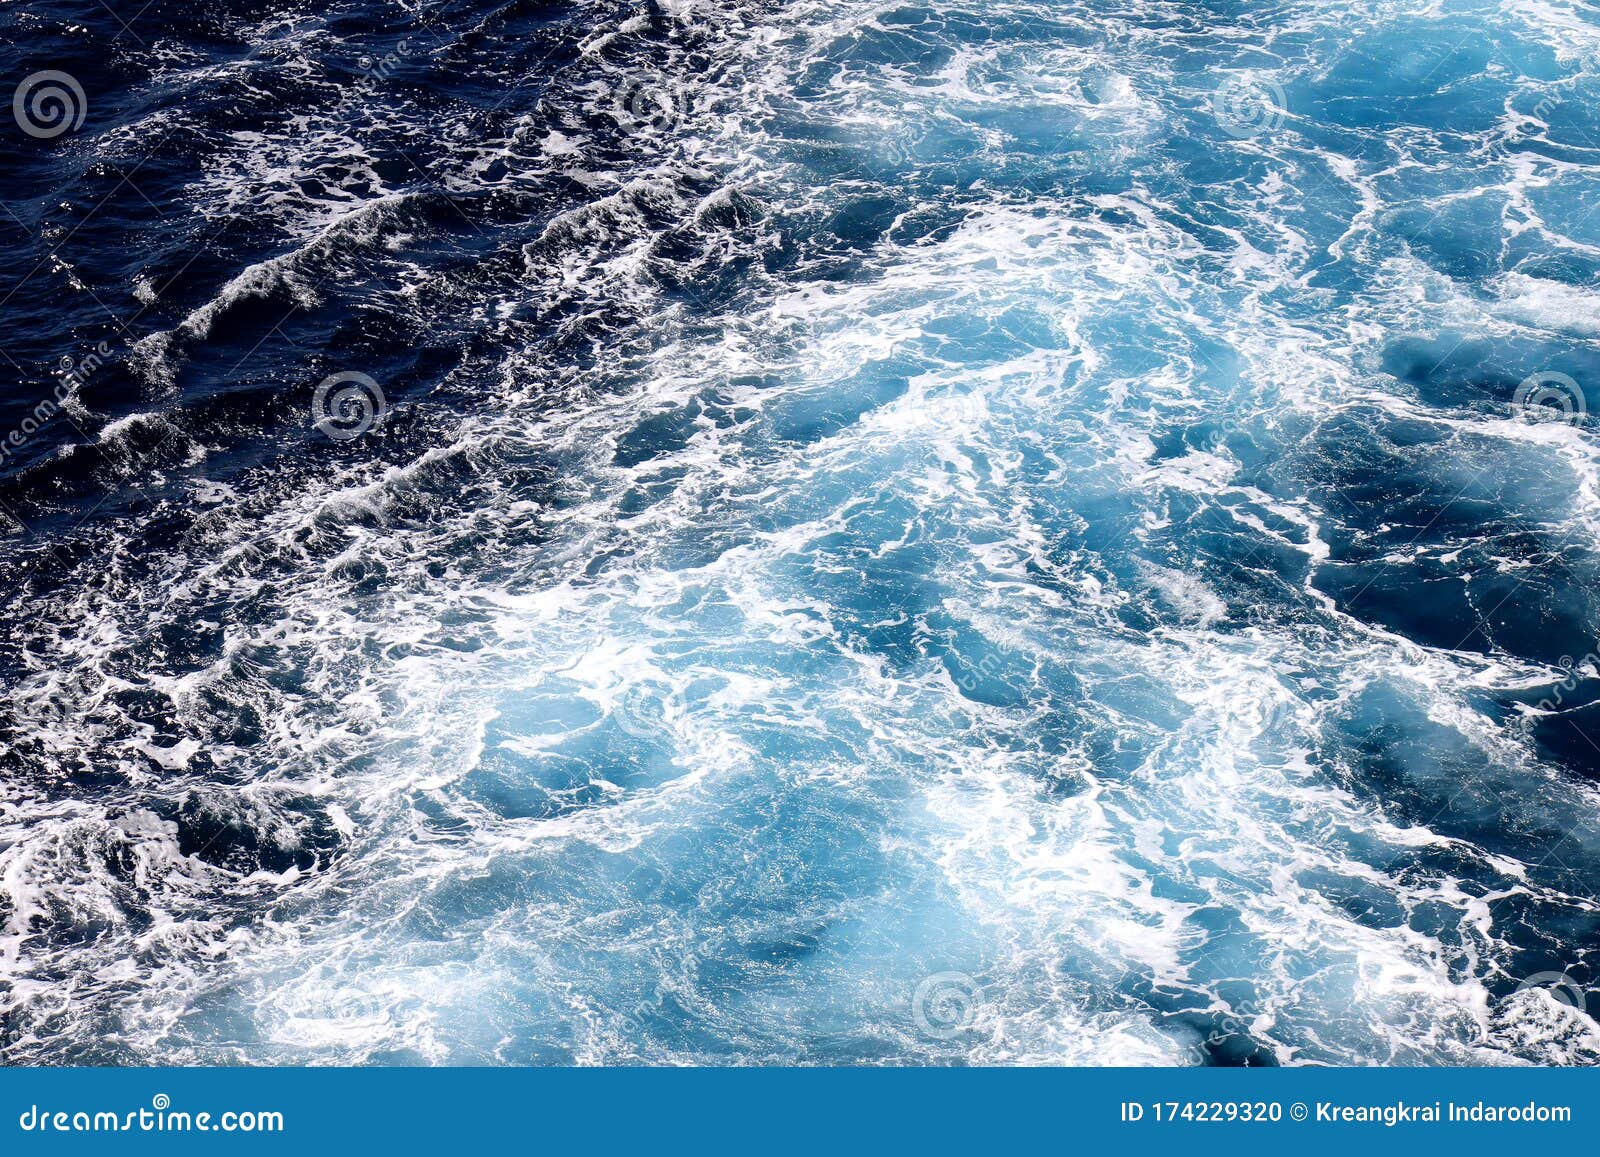 海浪壁纸 深蓝色水和海泡从空中看 自然抽象图案背景库存照片 图片包括有环境 海景 背包 强烈